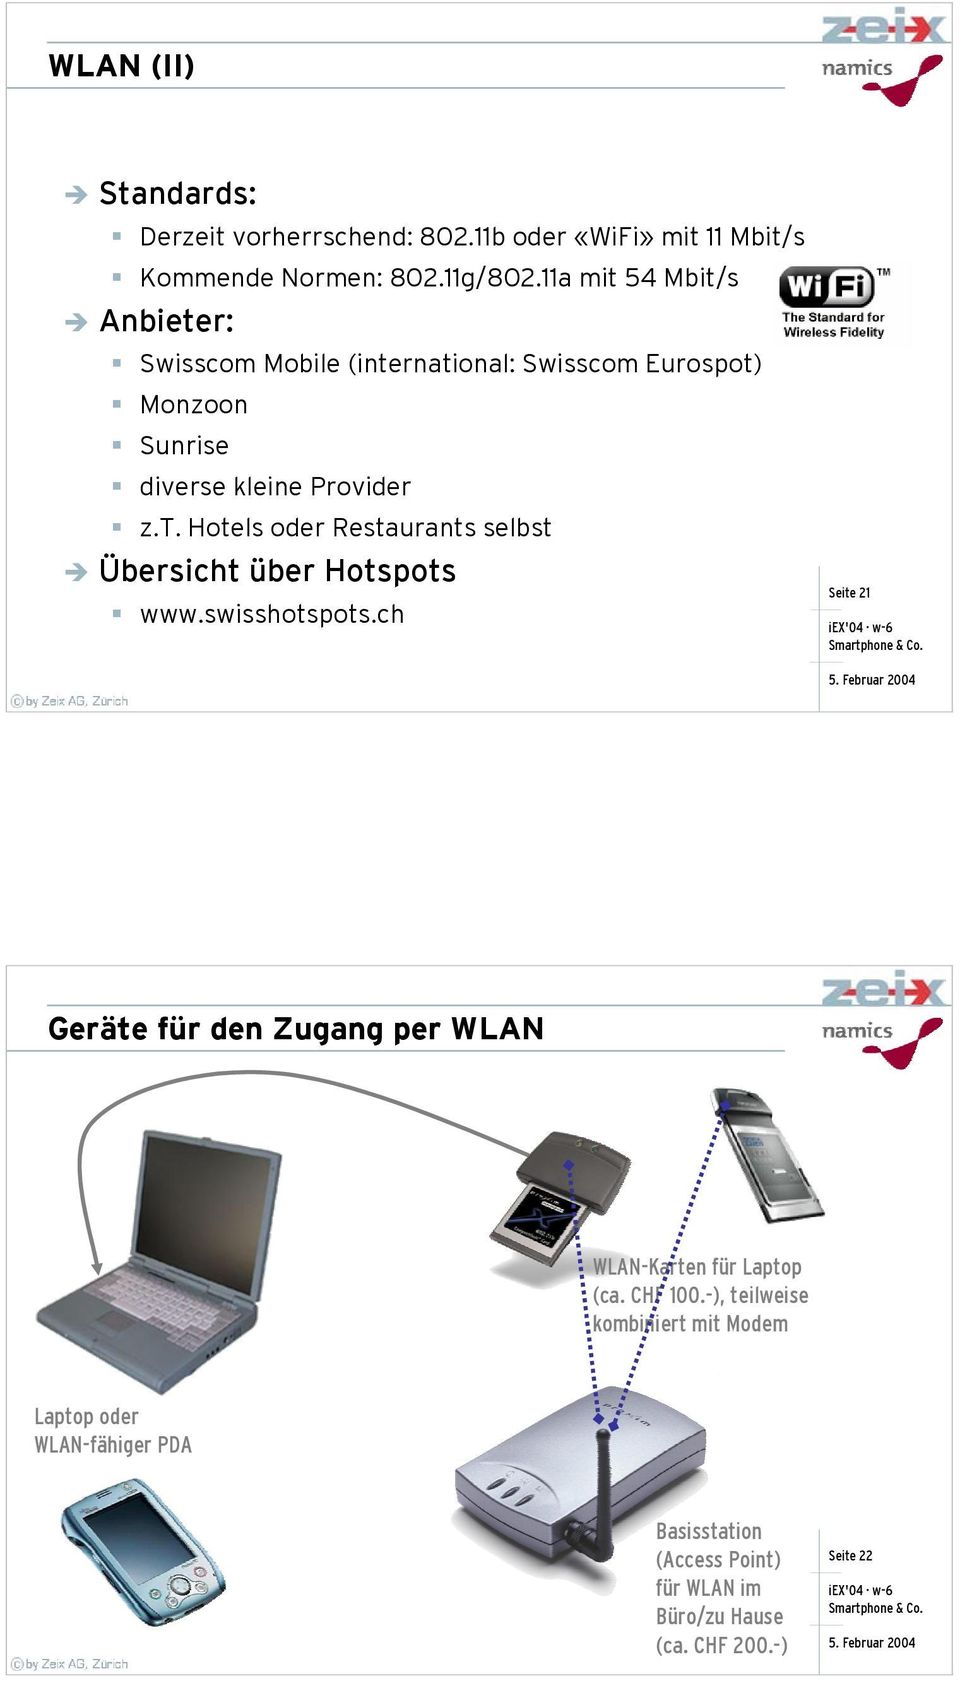 swisshotspots.ch Geräte für den Zugang per WLAN WLAN-Karten für Laptop (ca. CHF 100.